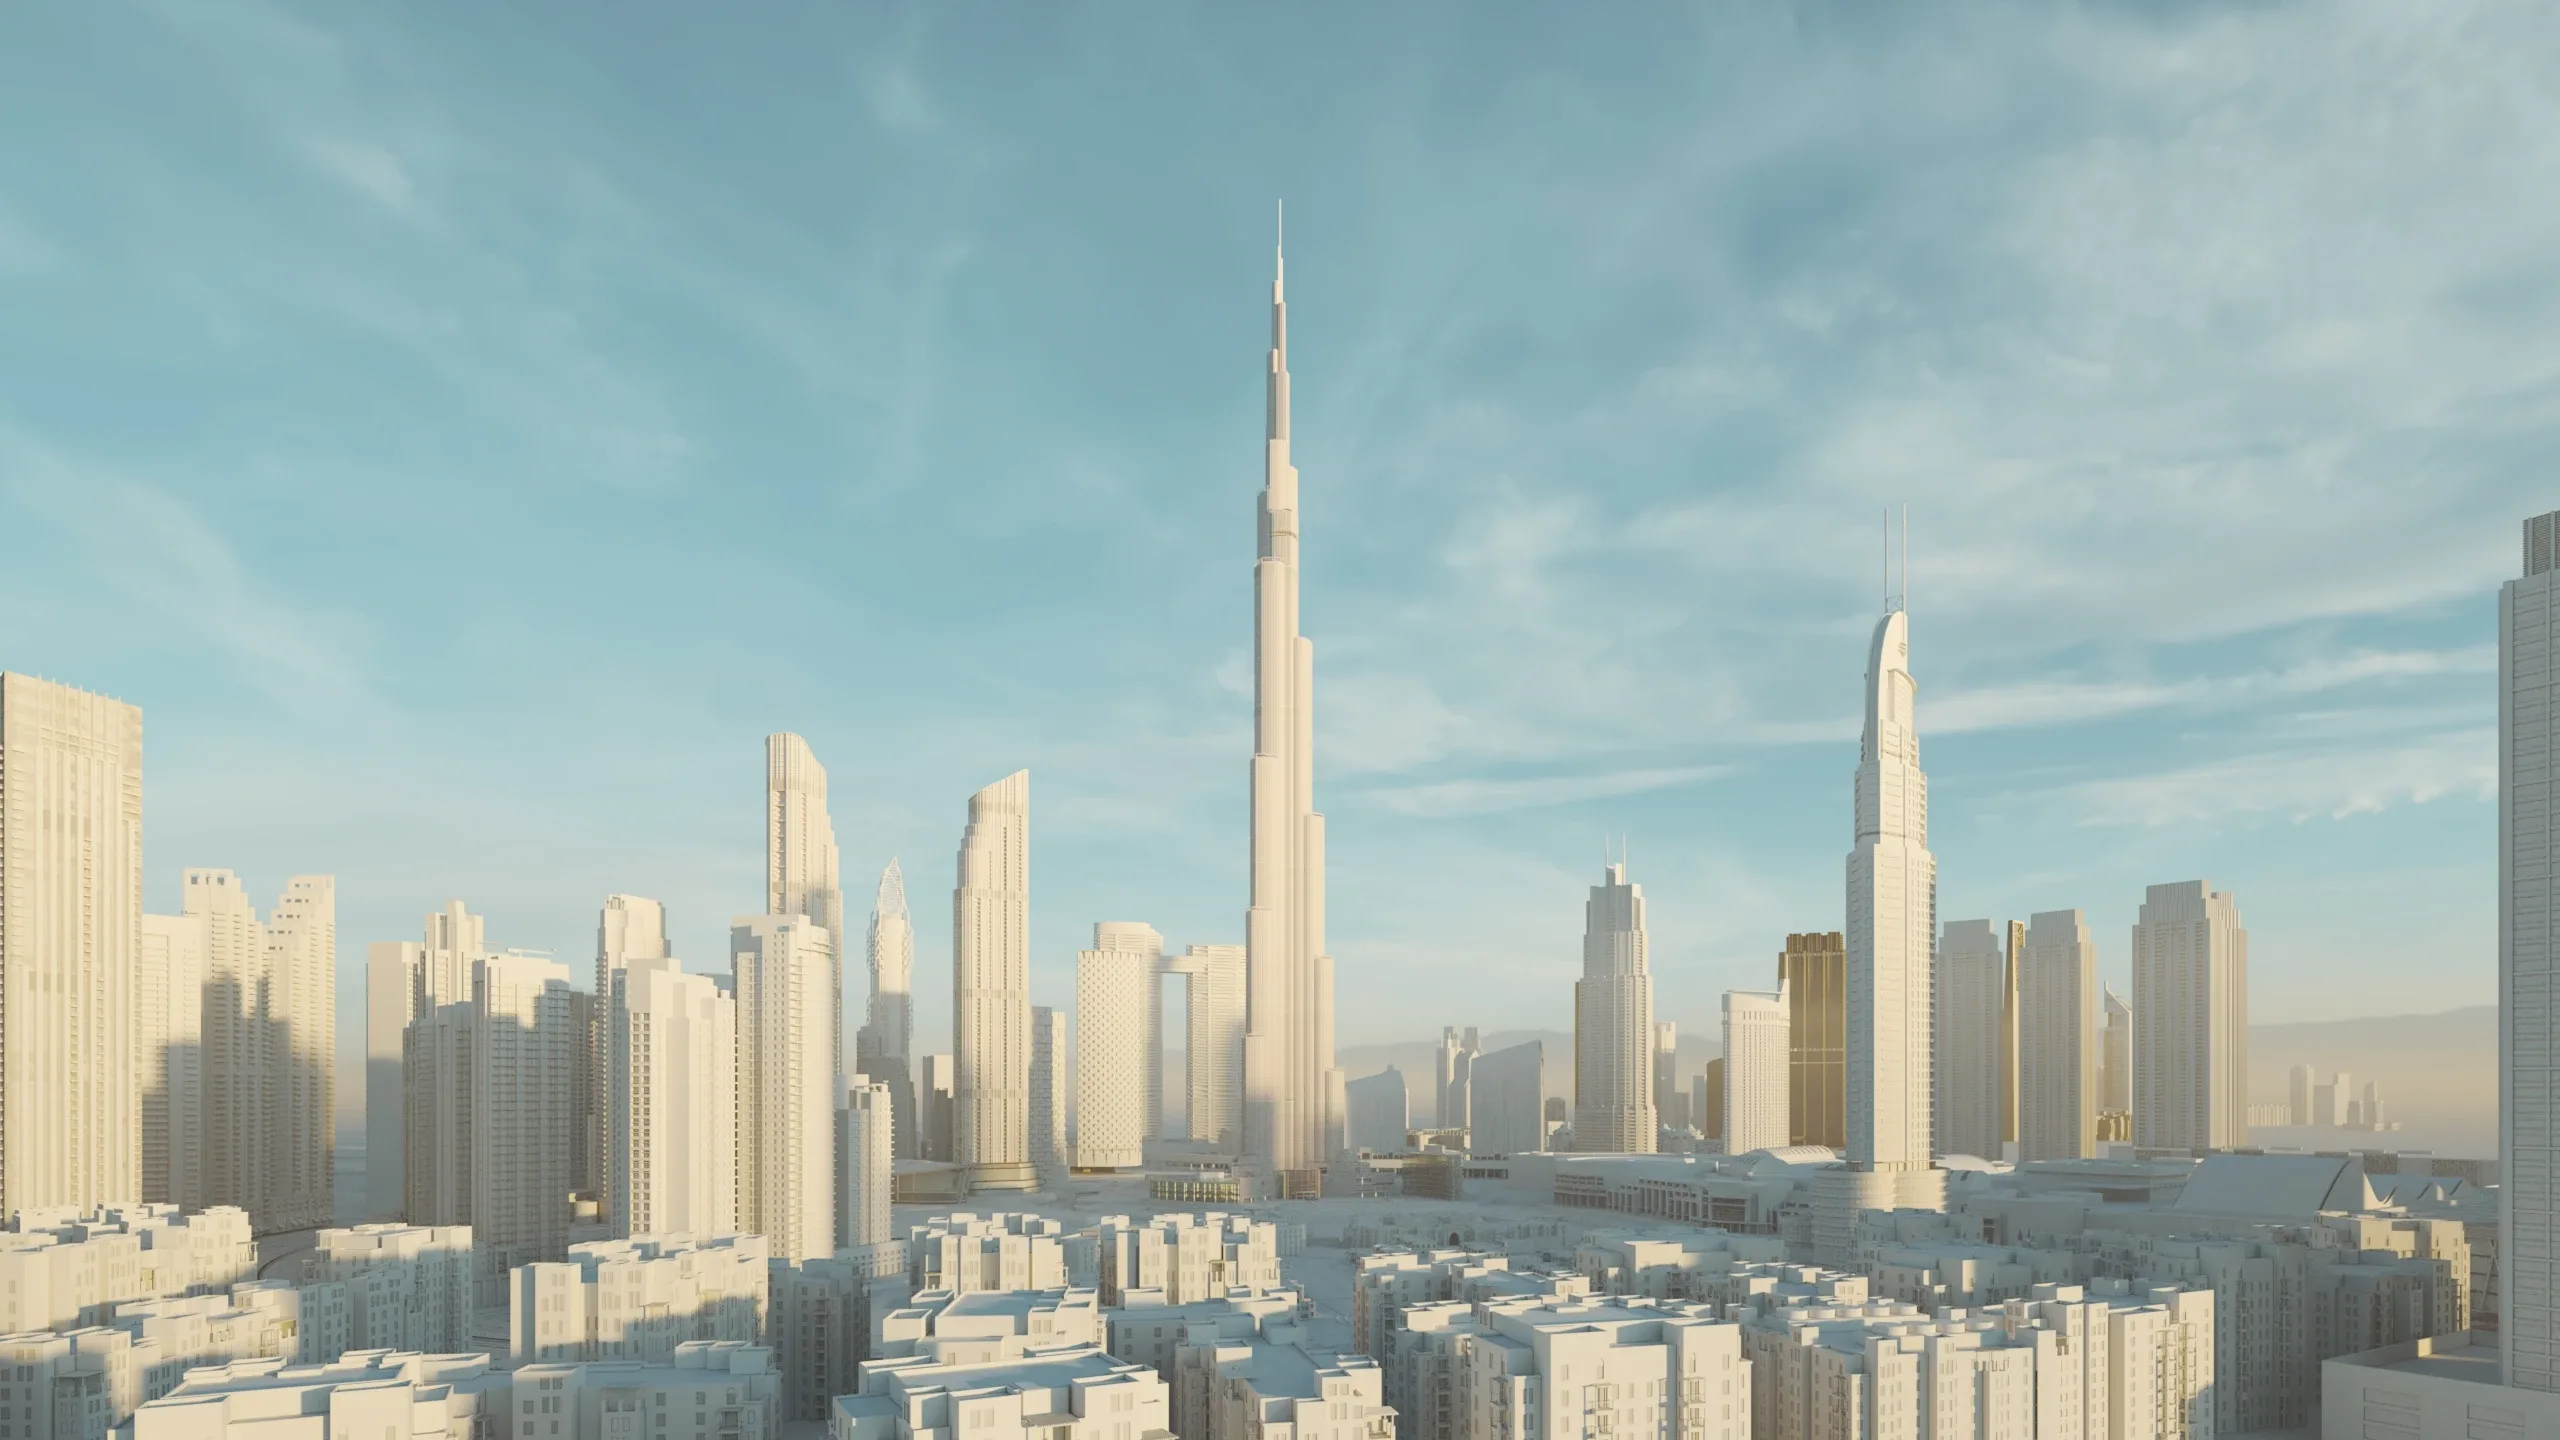 Dubai Burj khalifa Area v2 3D model